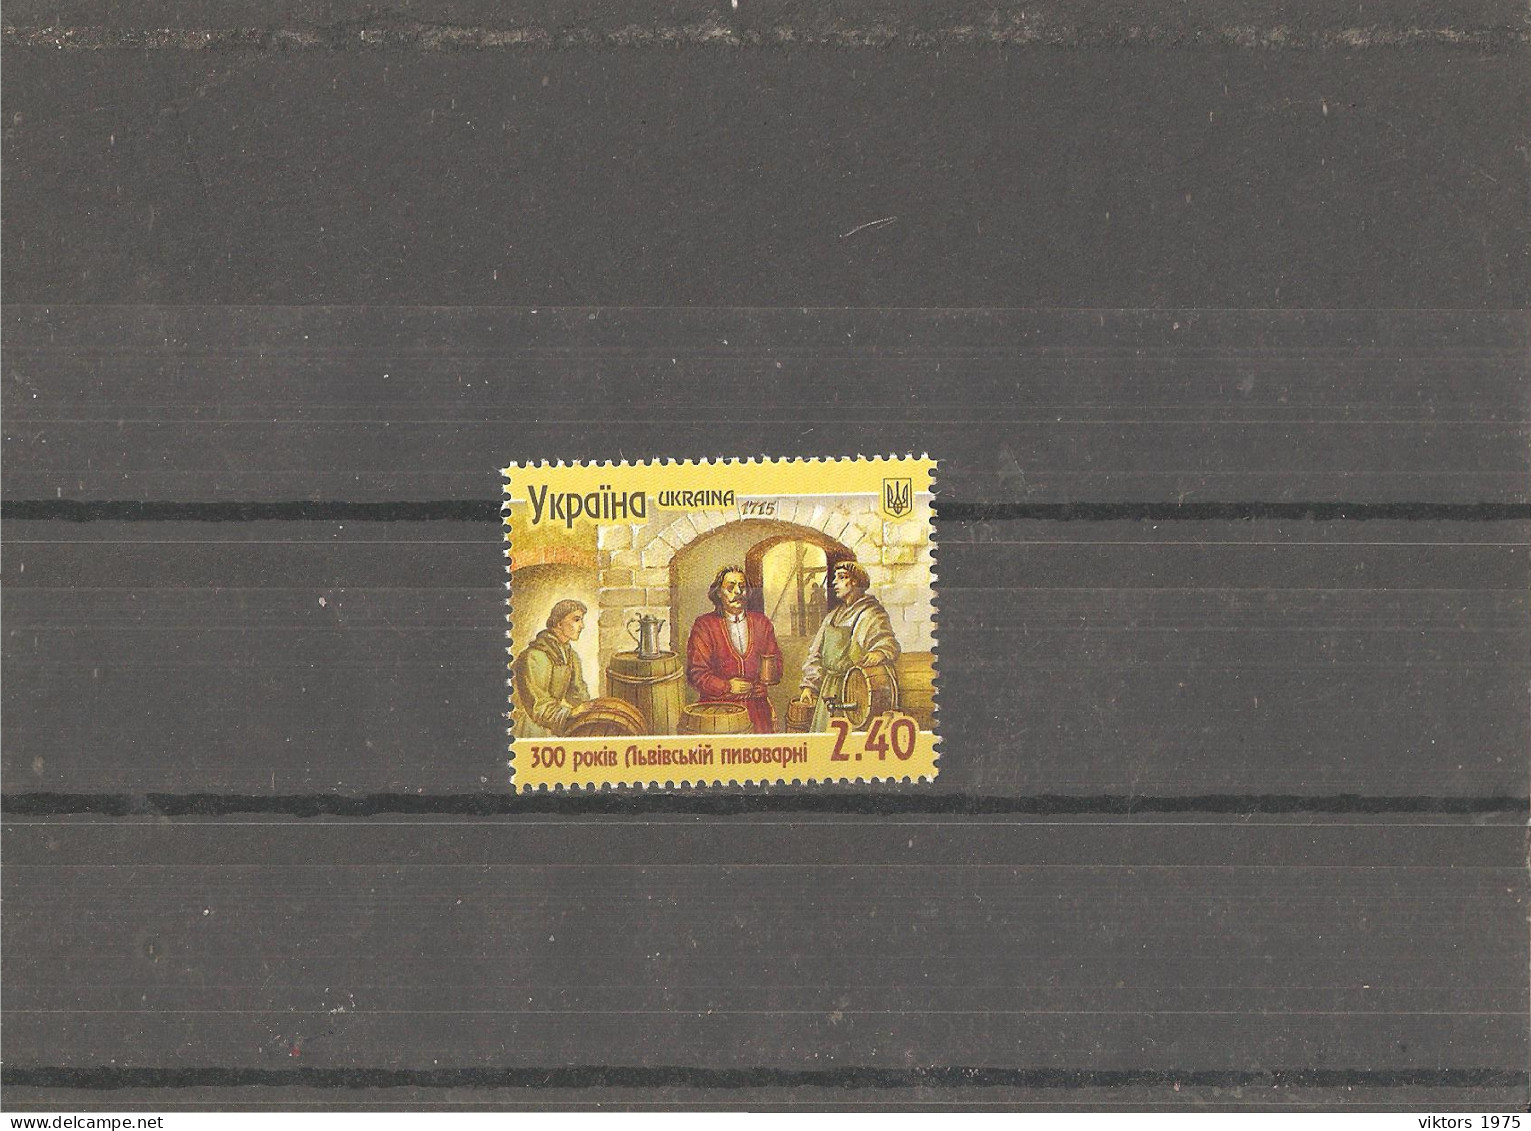 MNH Stamp Nr.1509 In MICHEL Catalog - Ukraine